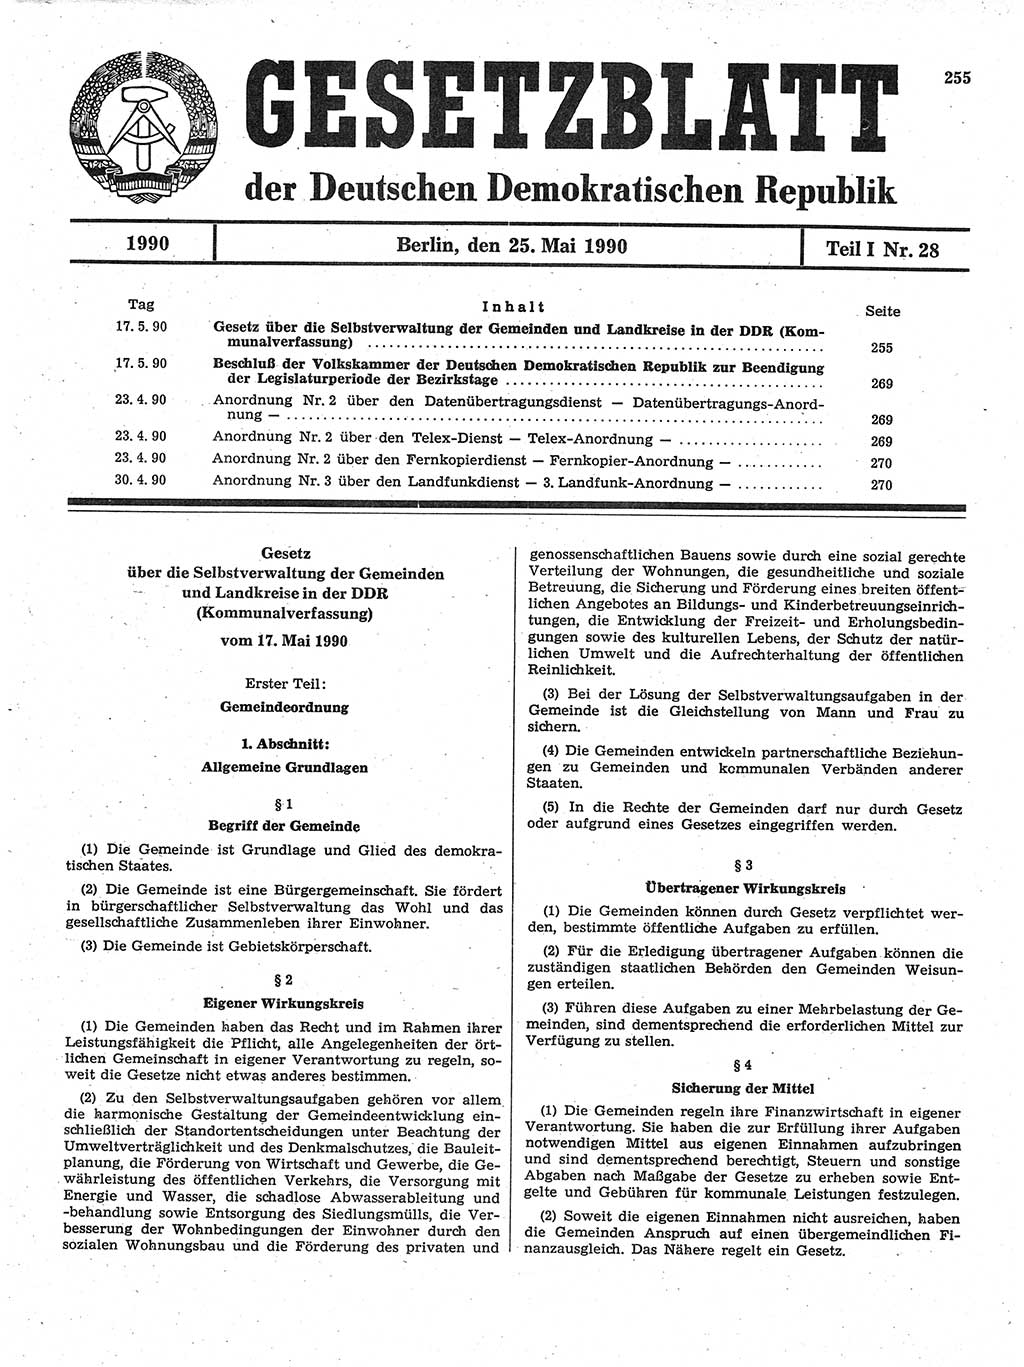 Gesetzblatt (GBl.) der Deutschen Demokratischen Republik (DDR) Teil Ⅰ 1990, Seite 255 (GBl. DDR Ⅰ 1990, S. 255)